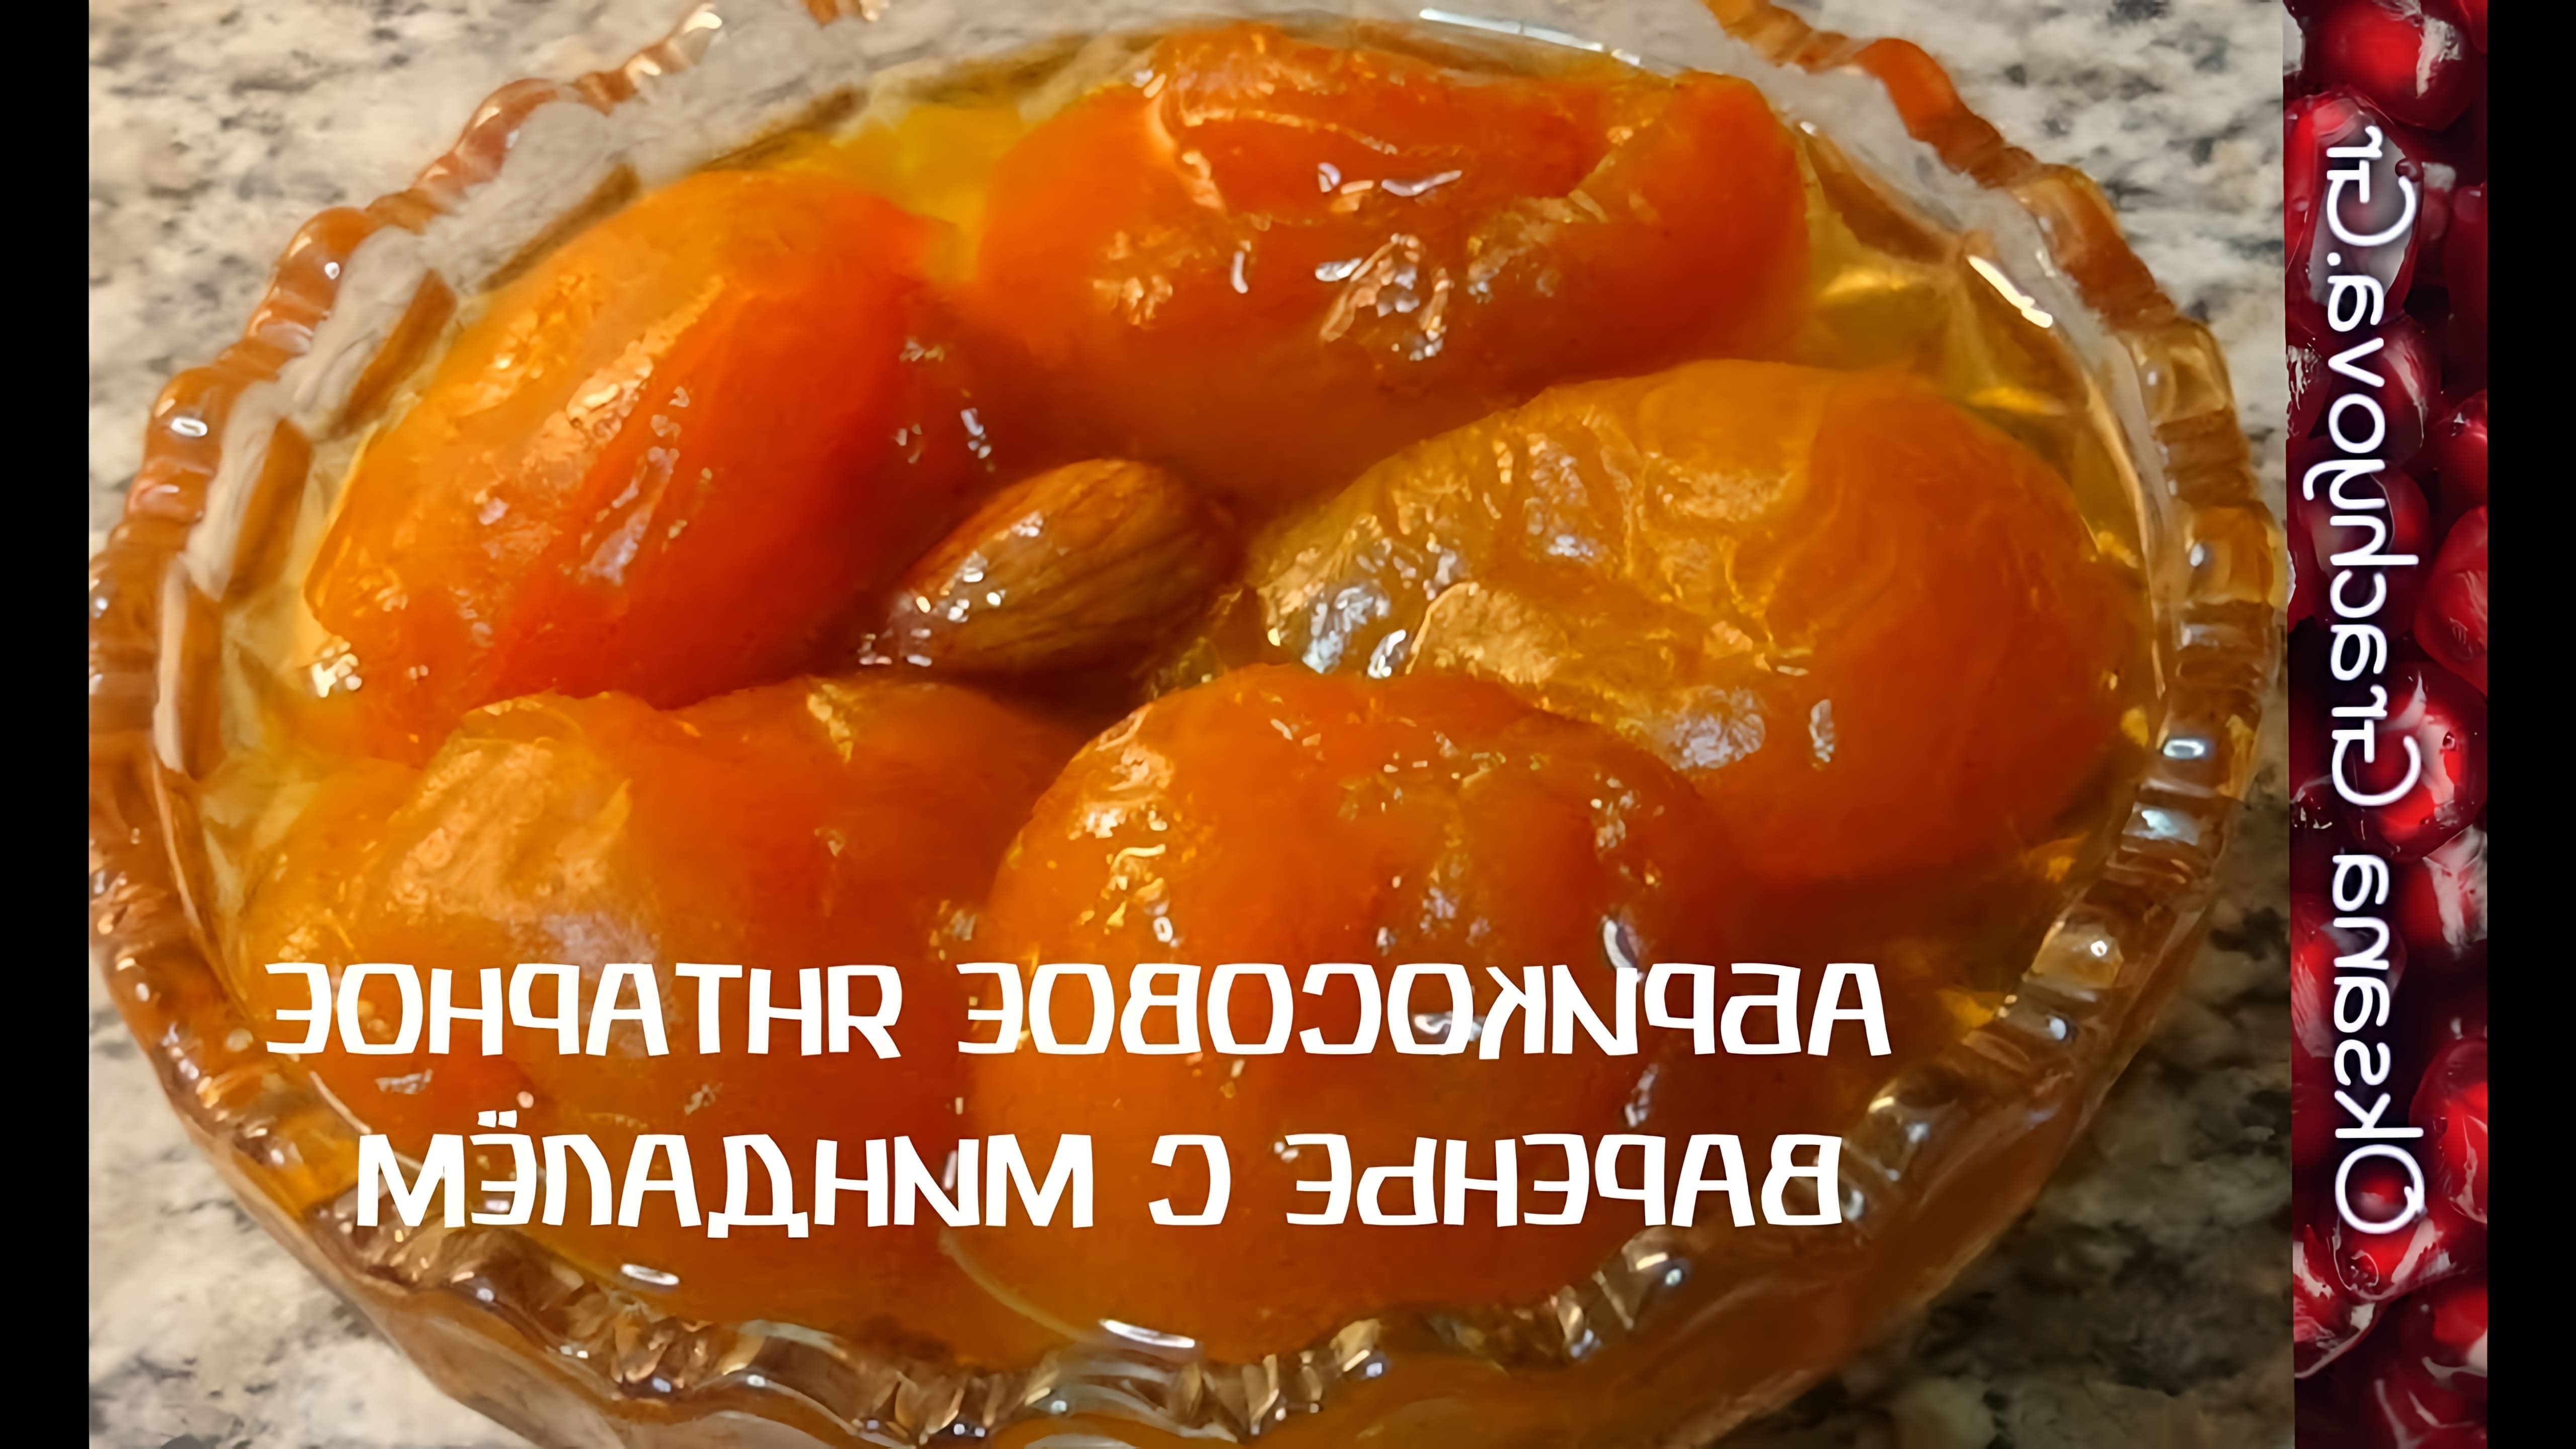 В этом видео демонстрируется процесс приготовления абрикосового варенья с изменениями в рецепте